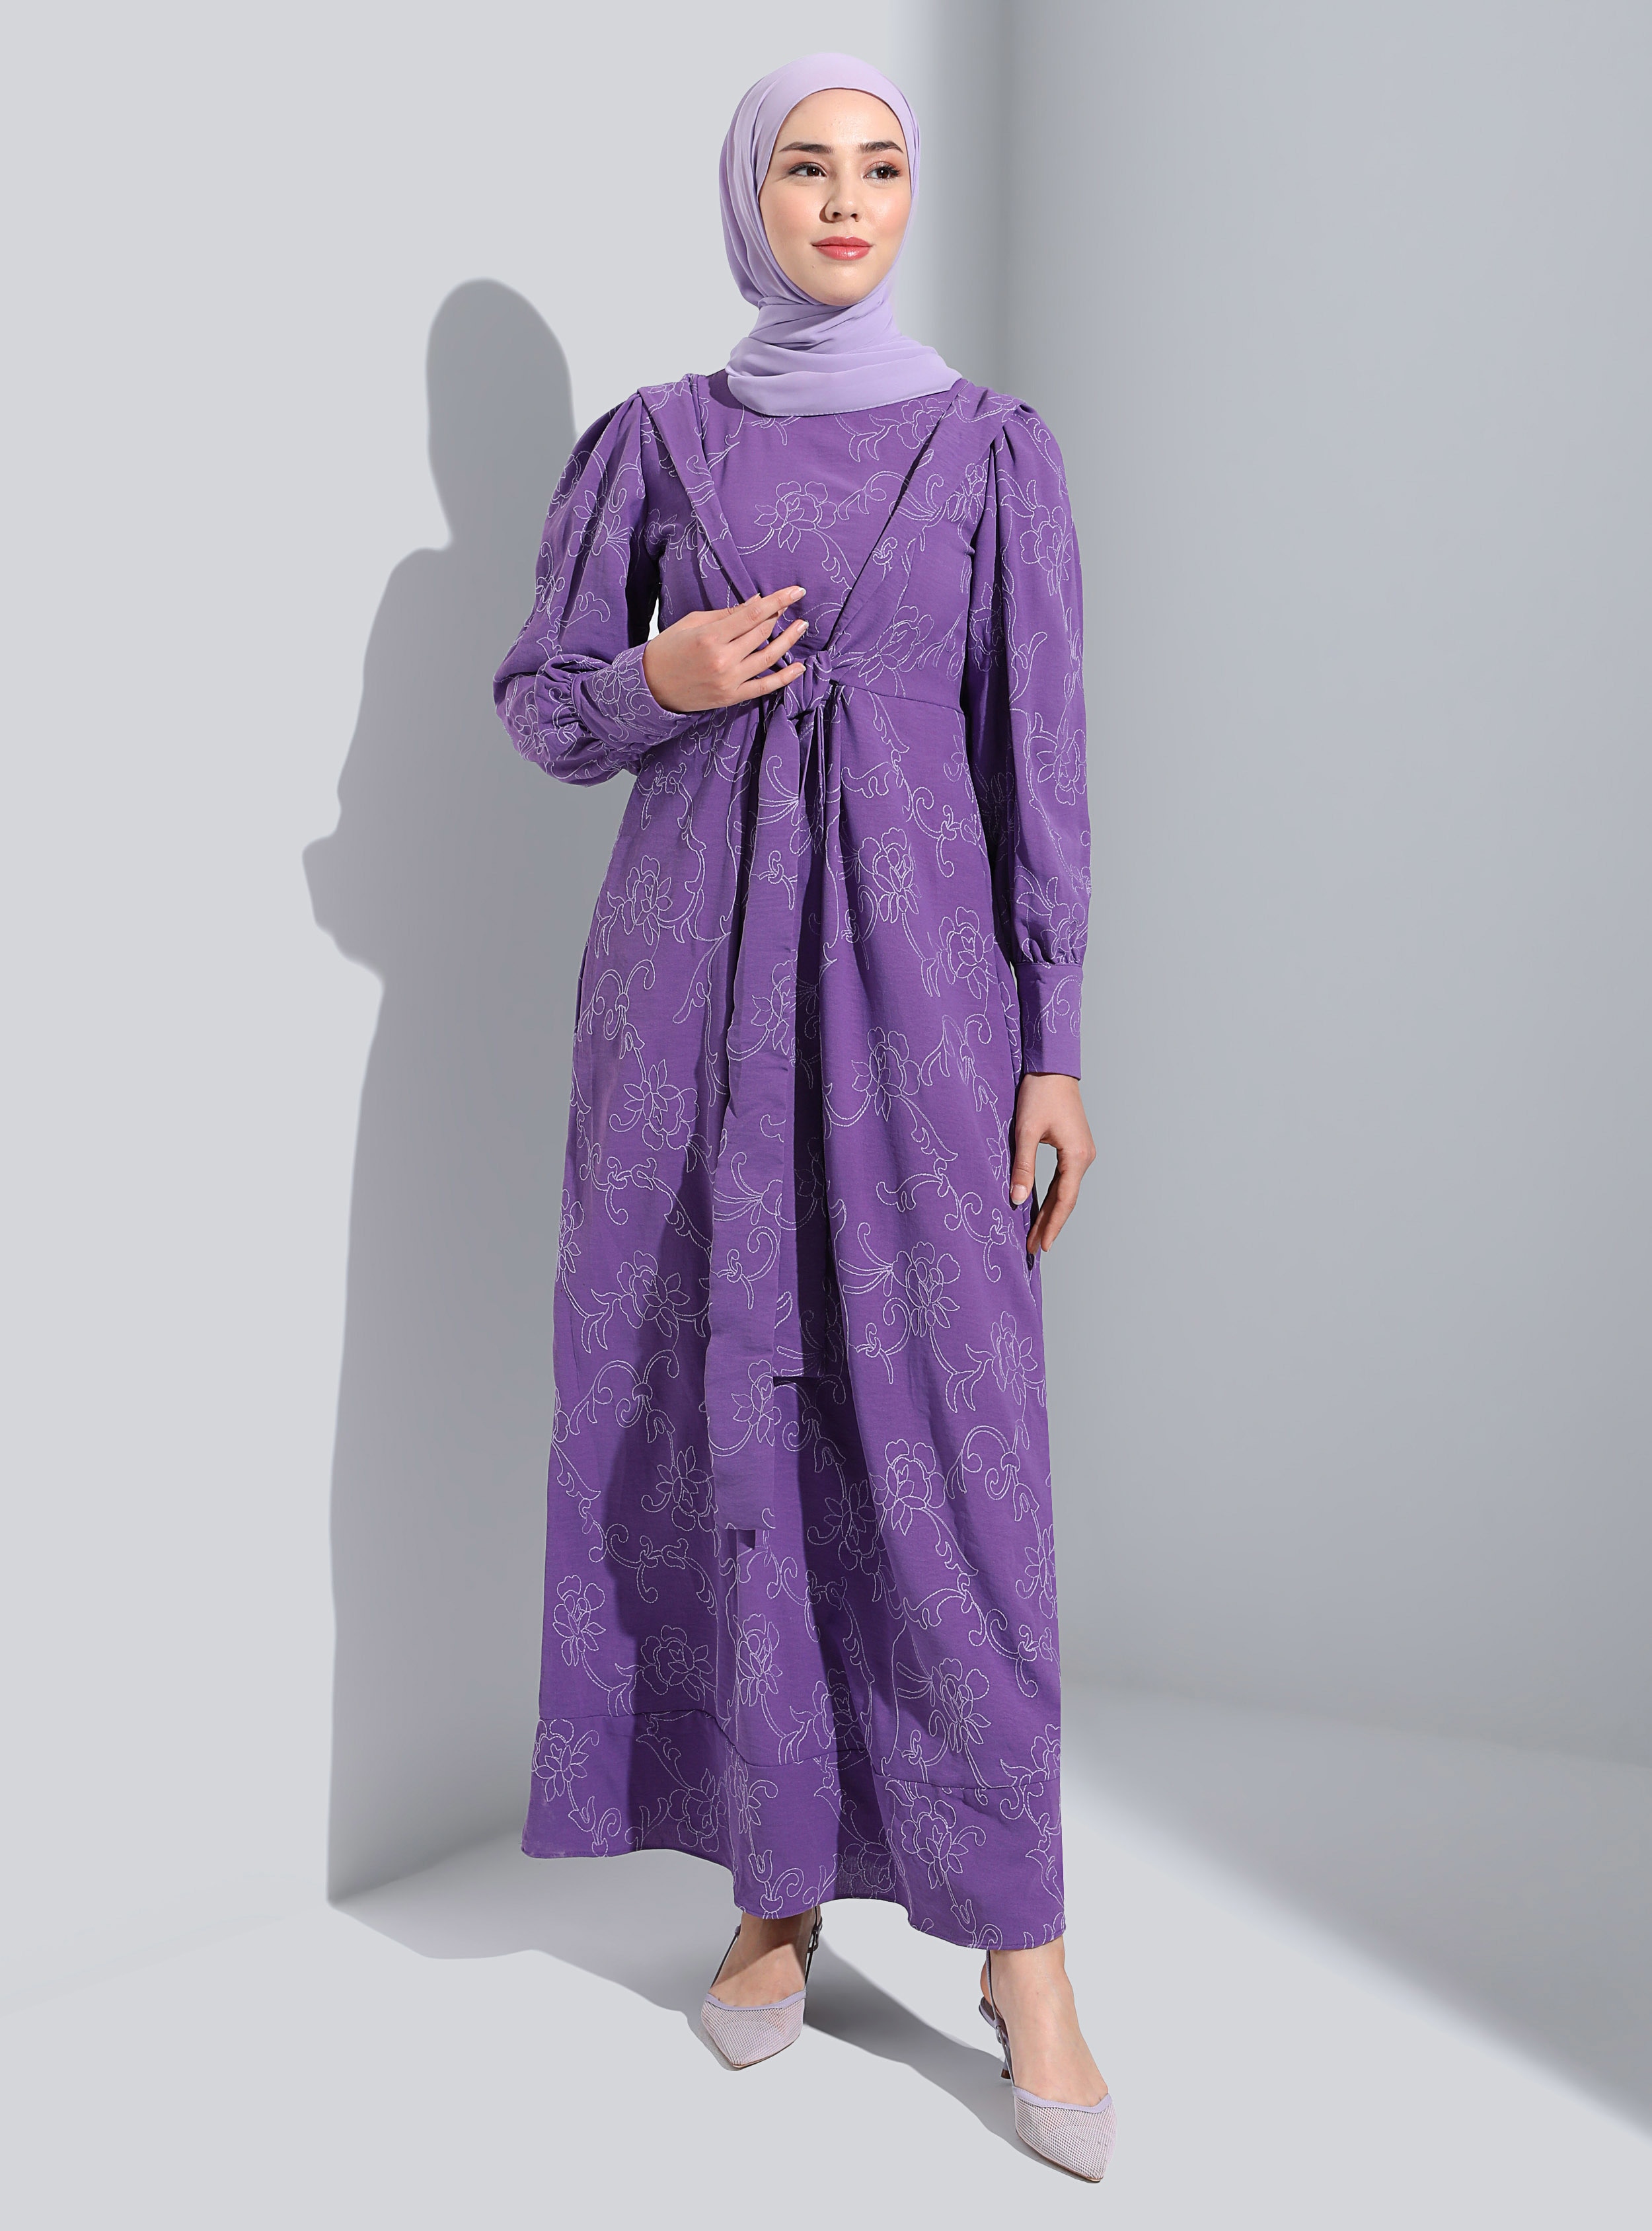 Vintage Purple - Crew neck - Unlined - Modest Dress